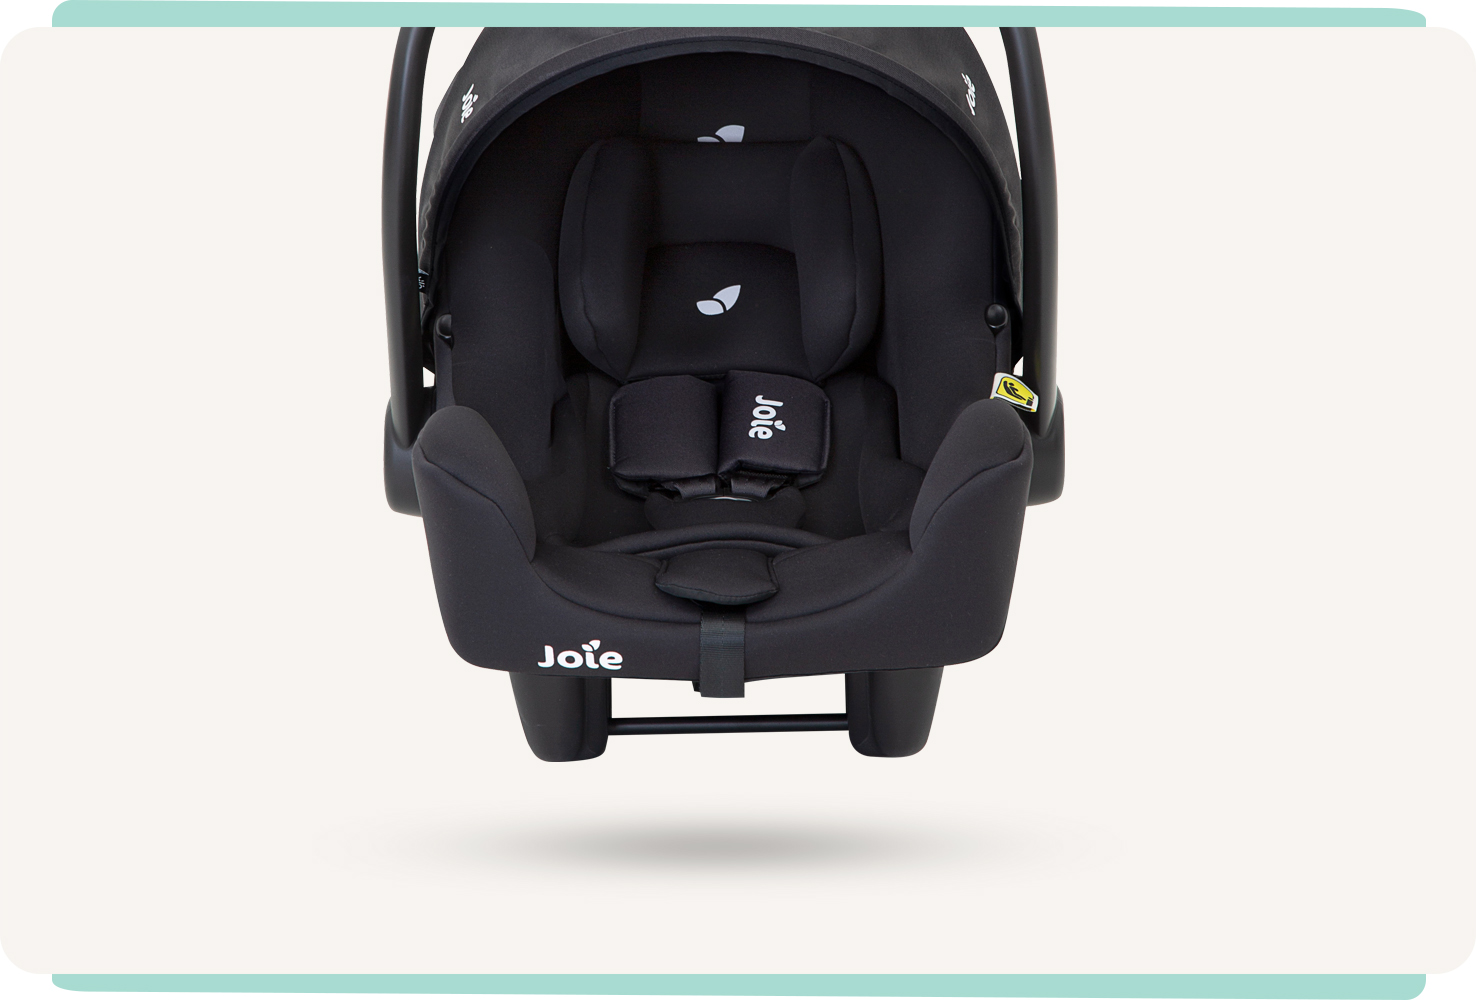 Siège auto pour bébé Joie I-snug, coloris noir deux tons, avec pare-soleil et poignée relevés, en position frontale.